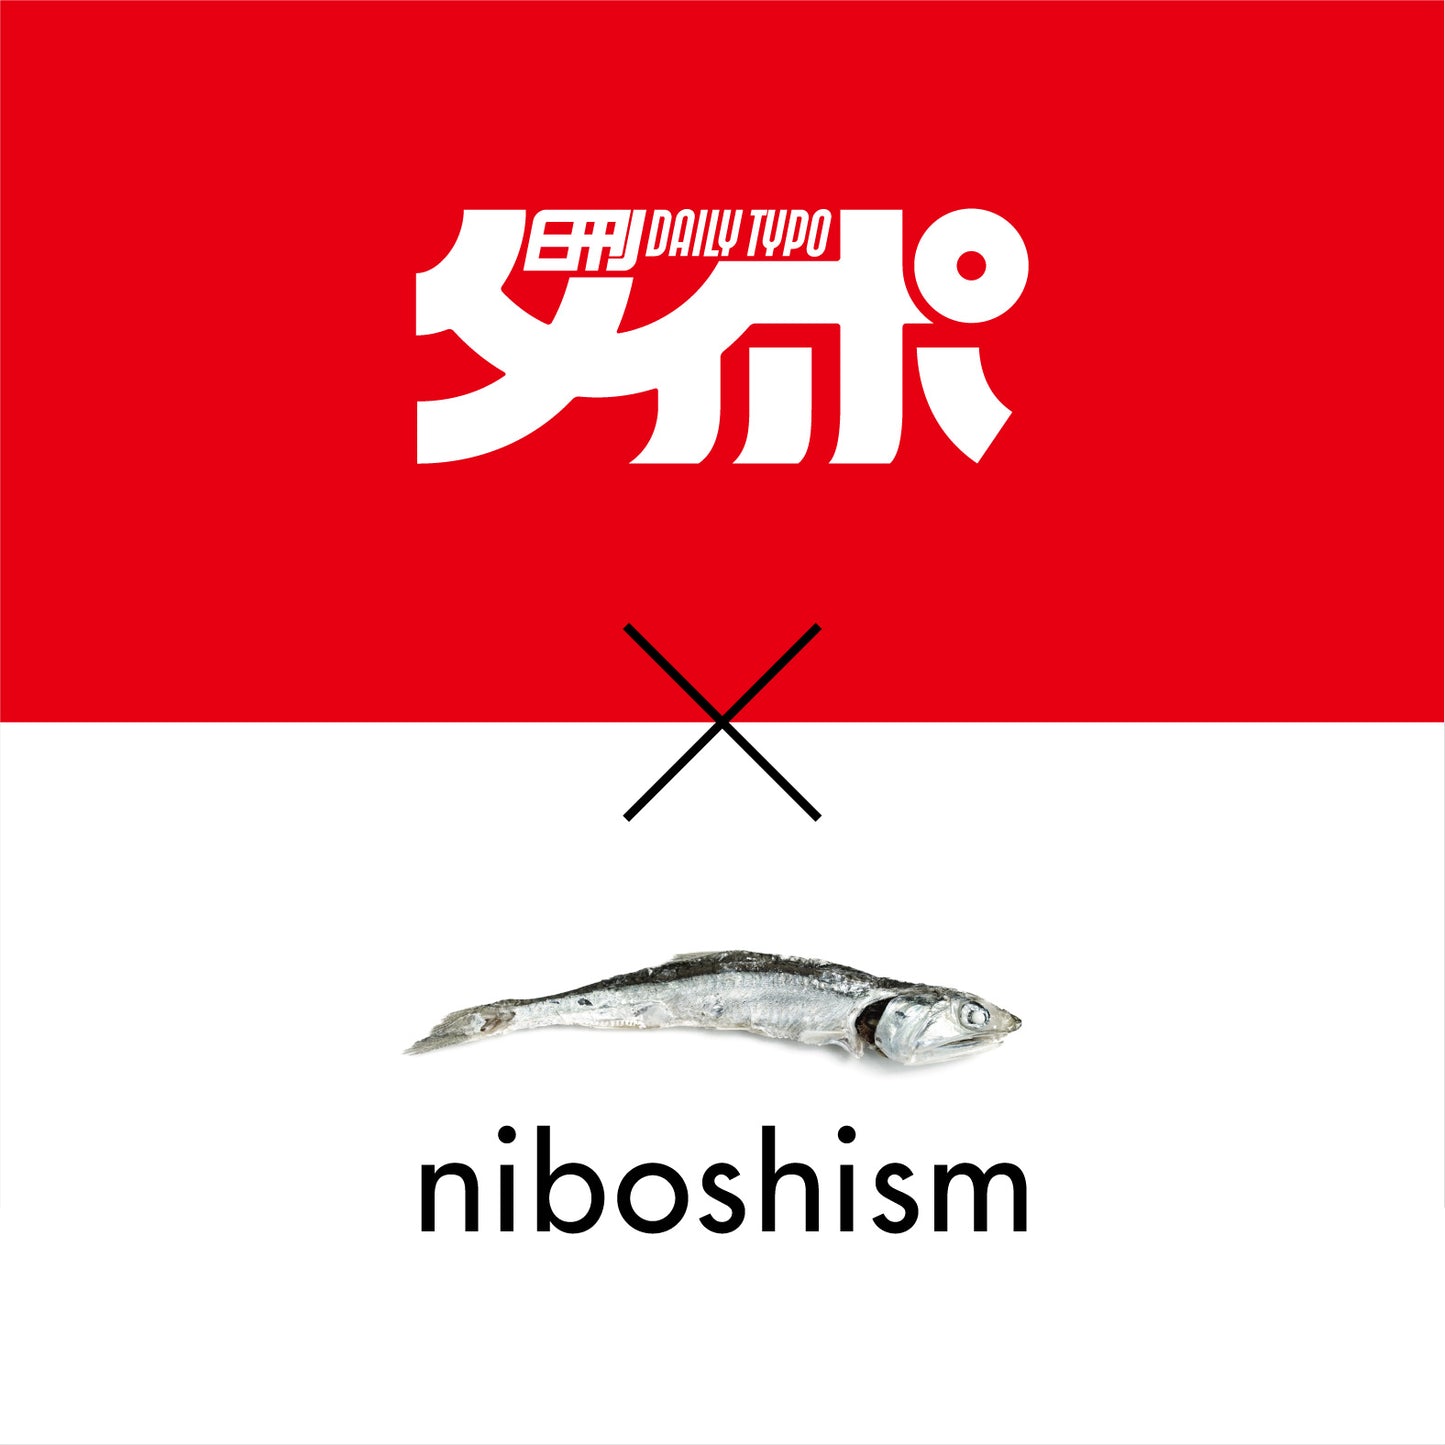 日刊タイポ×niboshism Collabo Sticker set